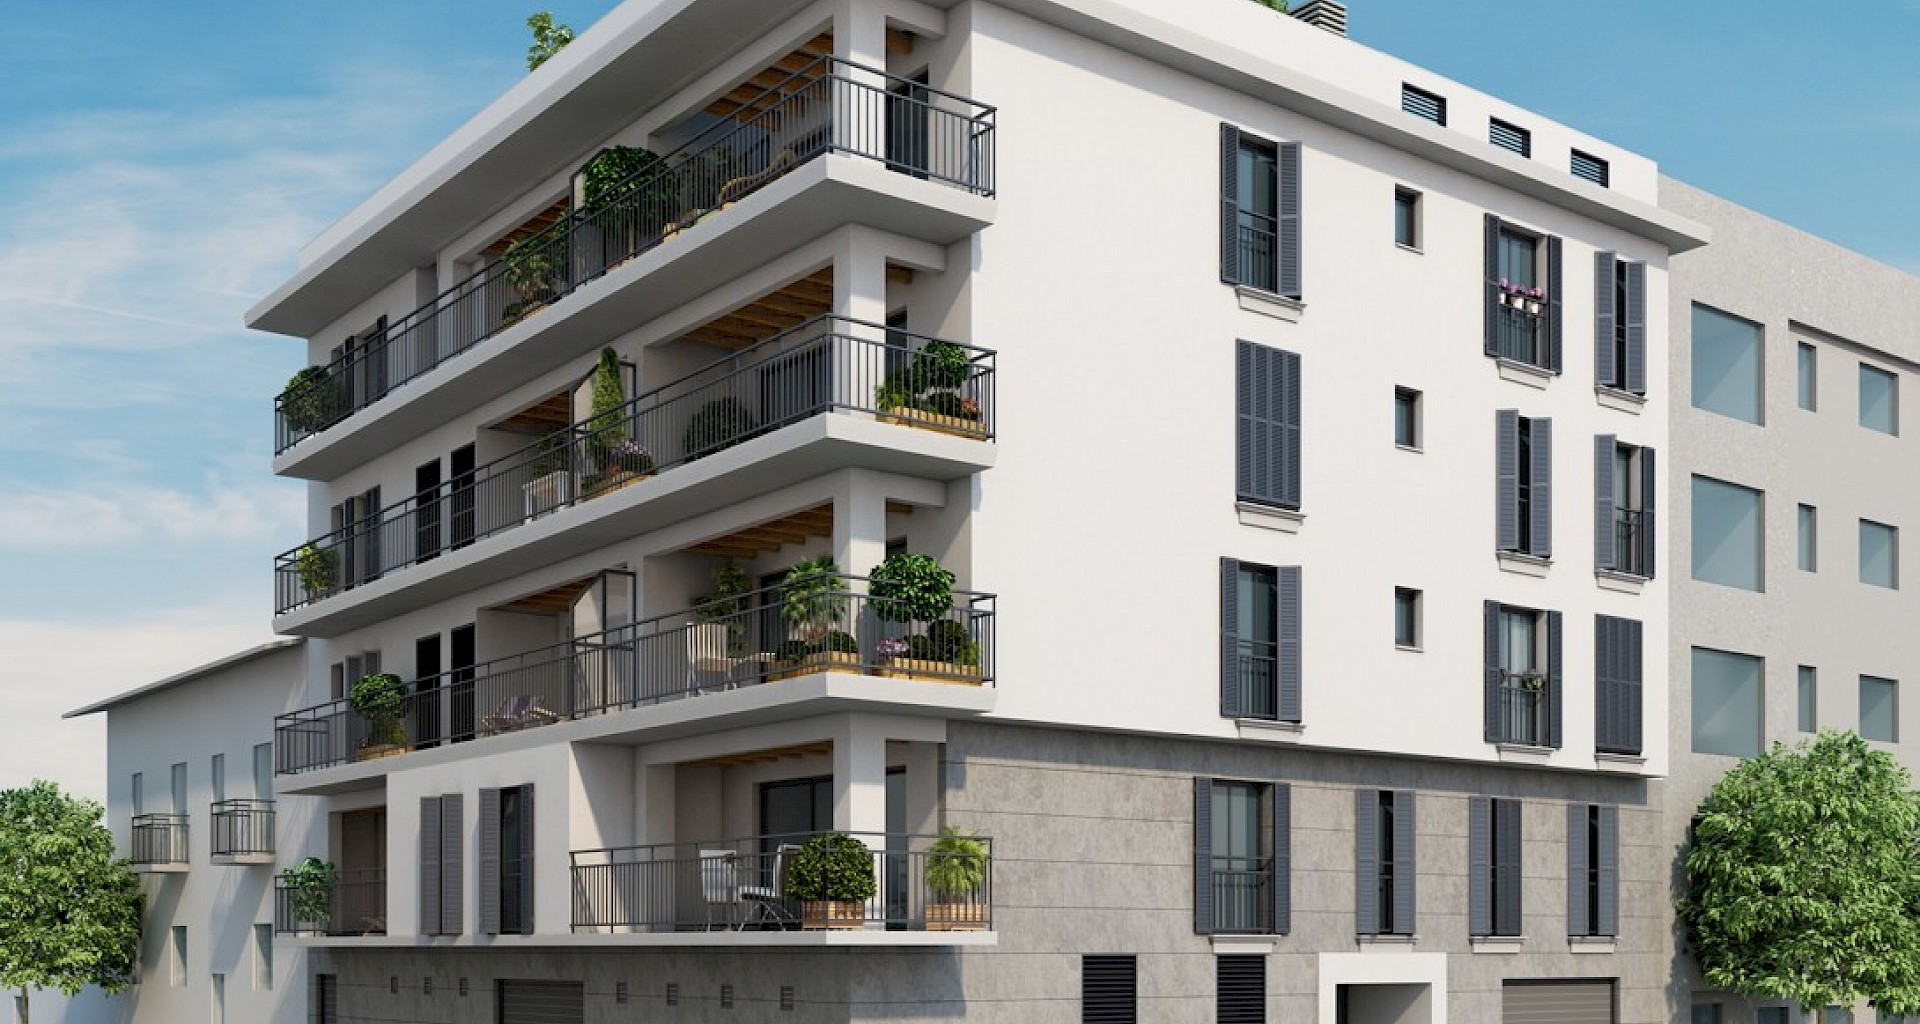 KROHN & LUEDEMANN Moderno apartamento de nueva construcción en Palma con vista al puerto cerca de Santa Catalina 